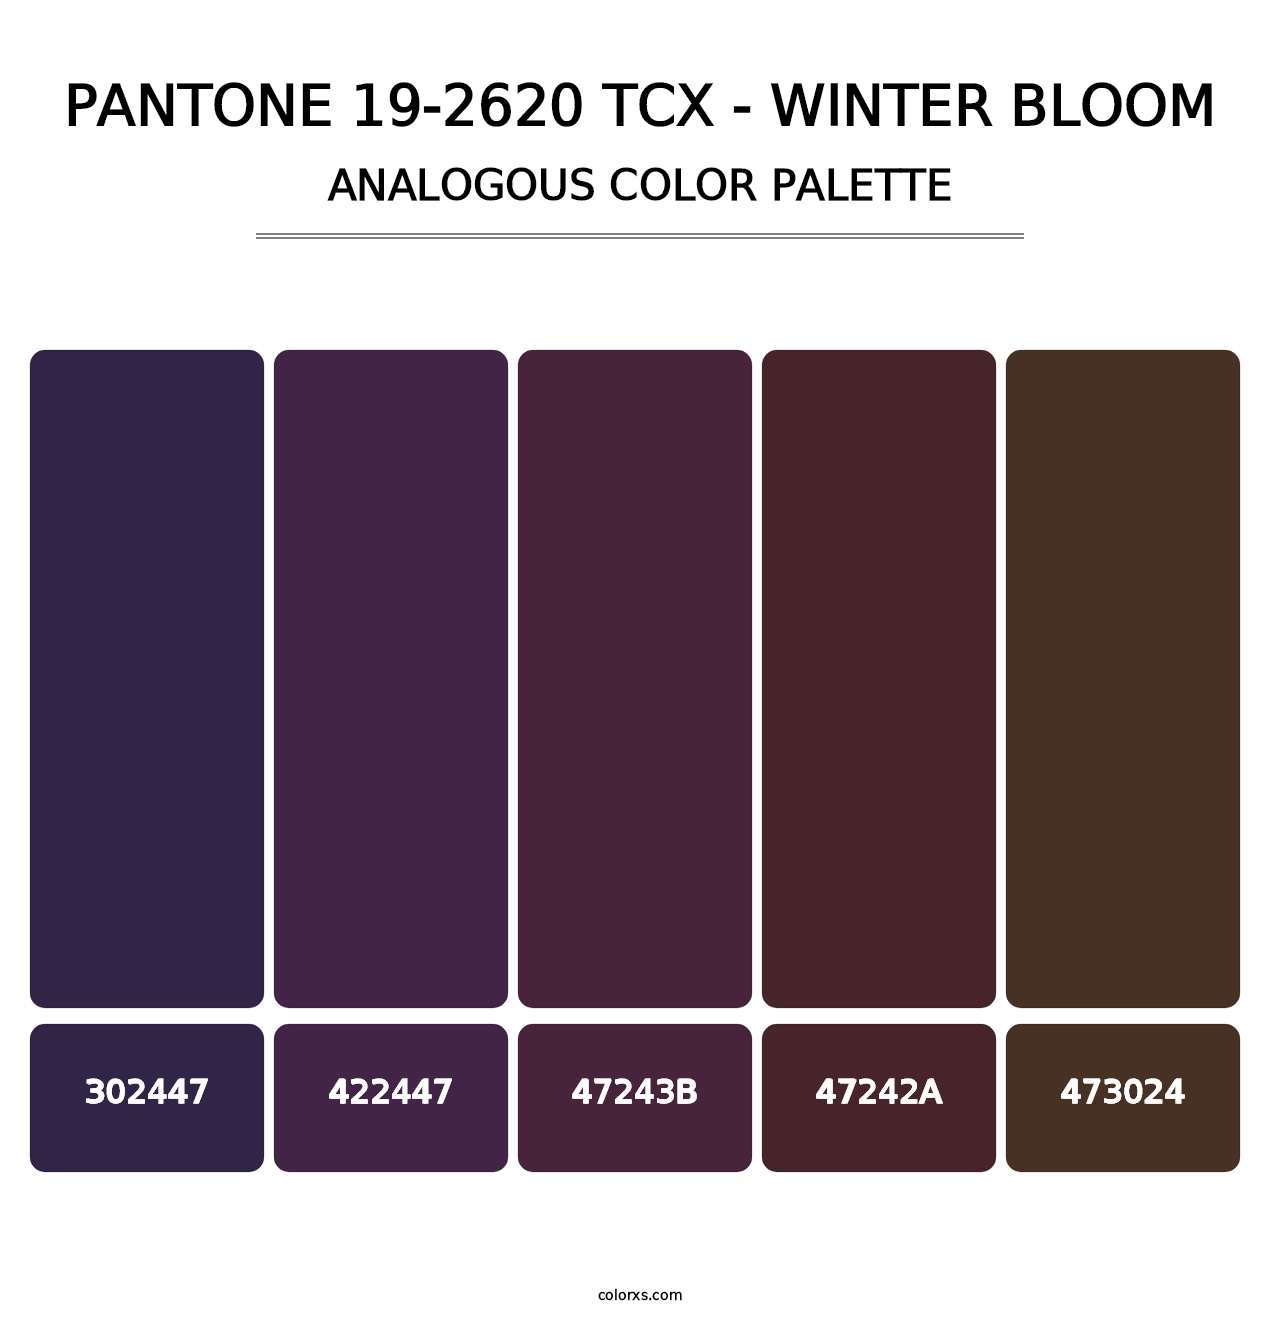 PANTONE 19-2620 TCX - Winter Bloom - Analogous Color Palette